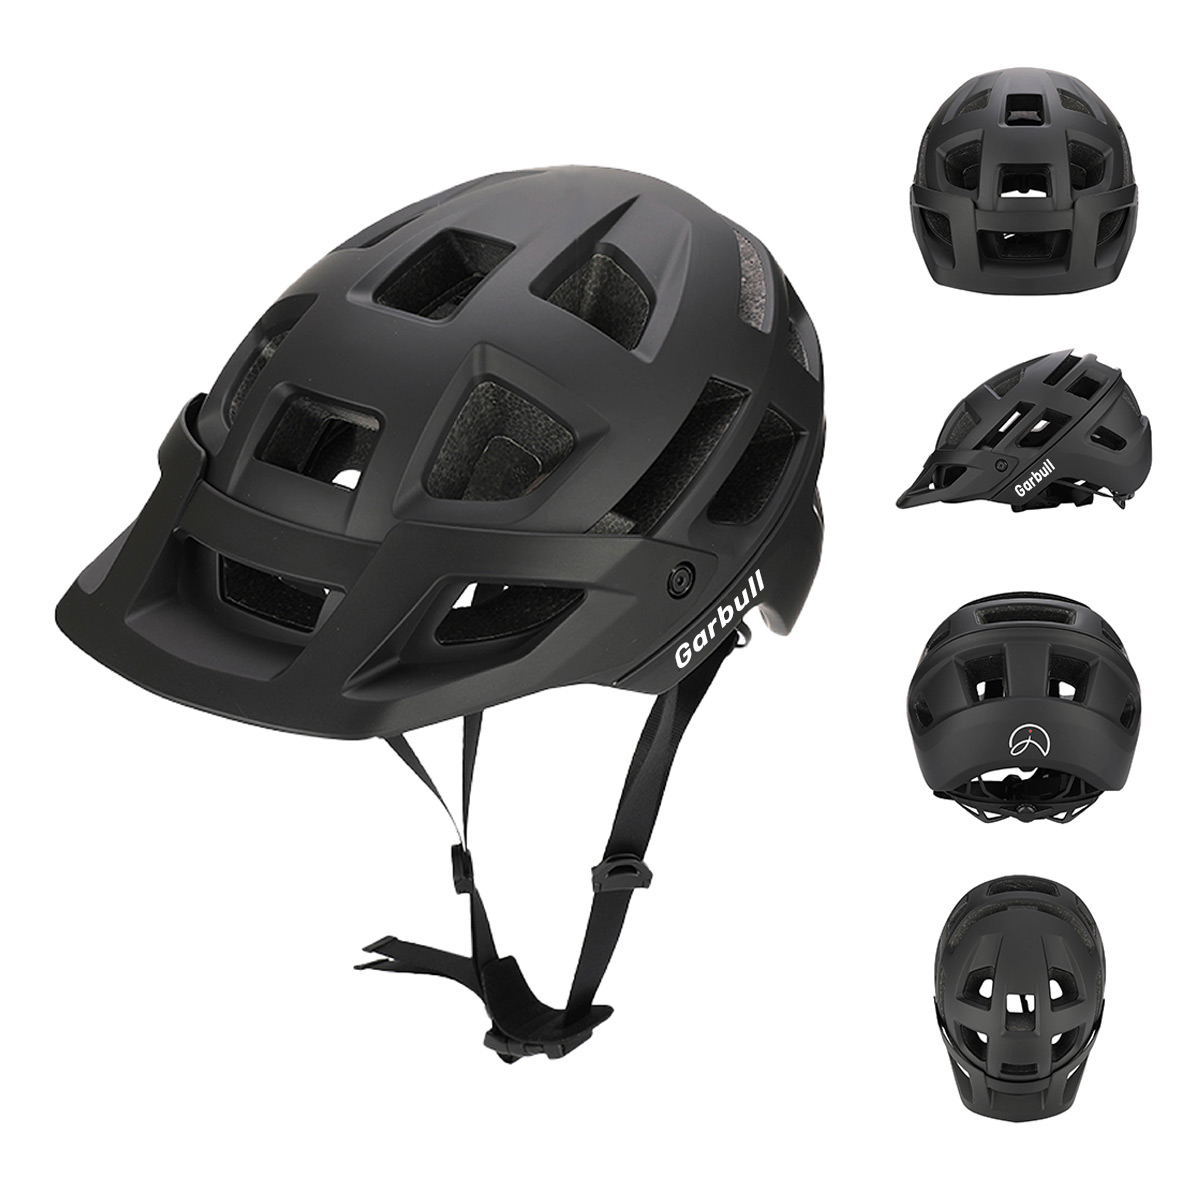 59-62 cm, Helm cm PROSCENIC Mountainbike, schwarz)